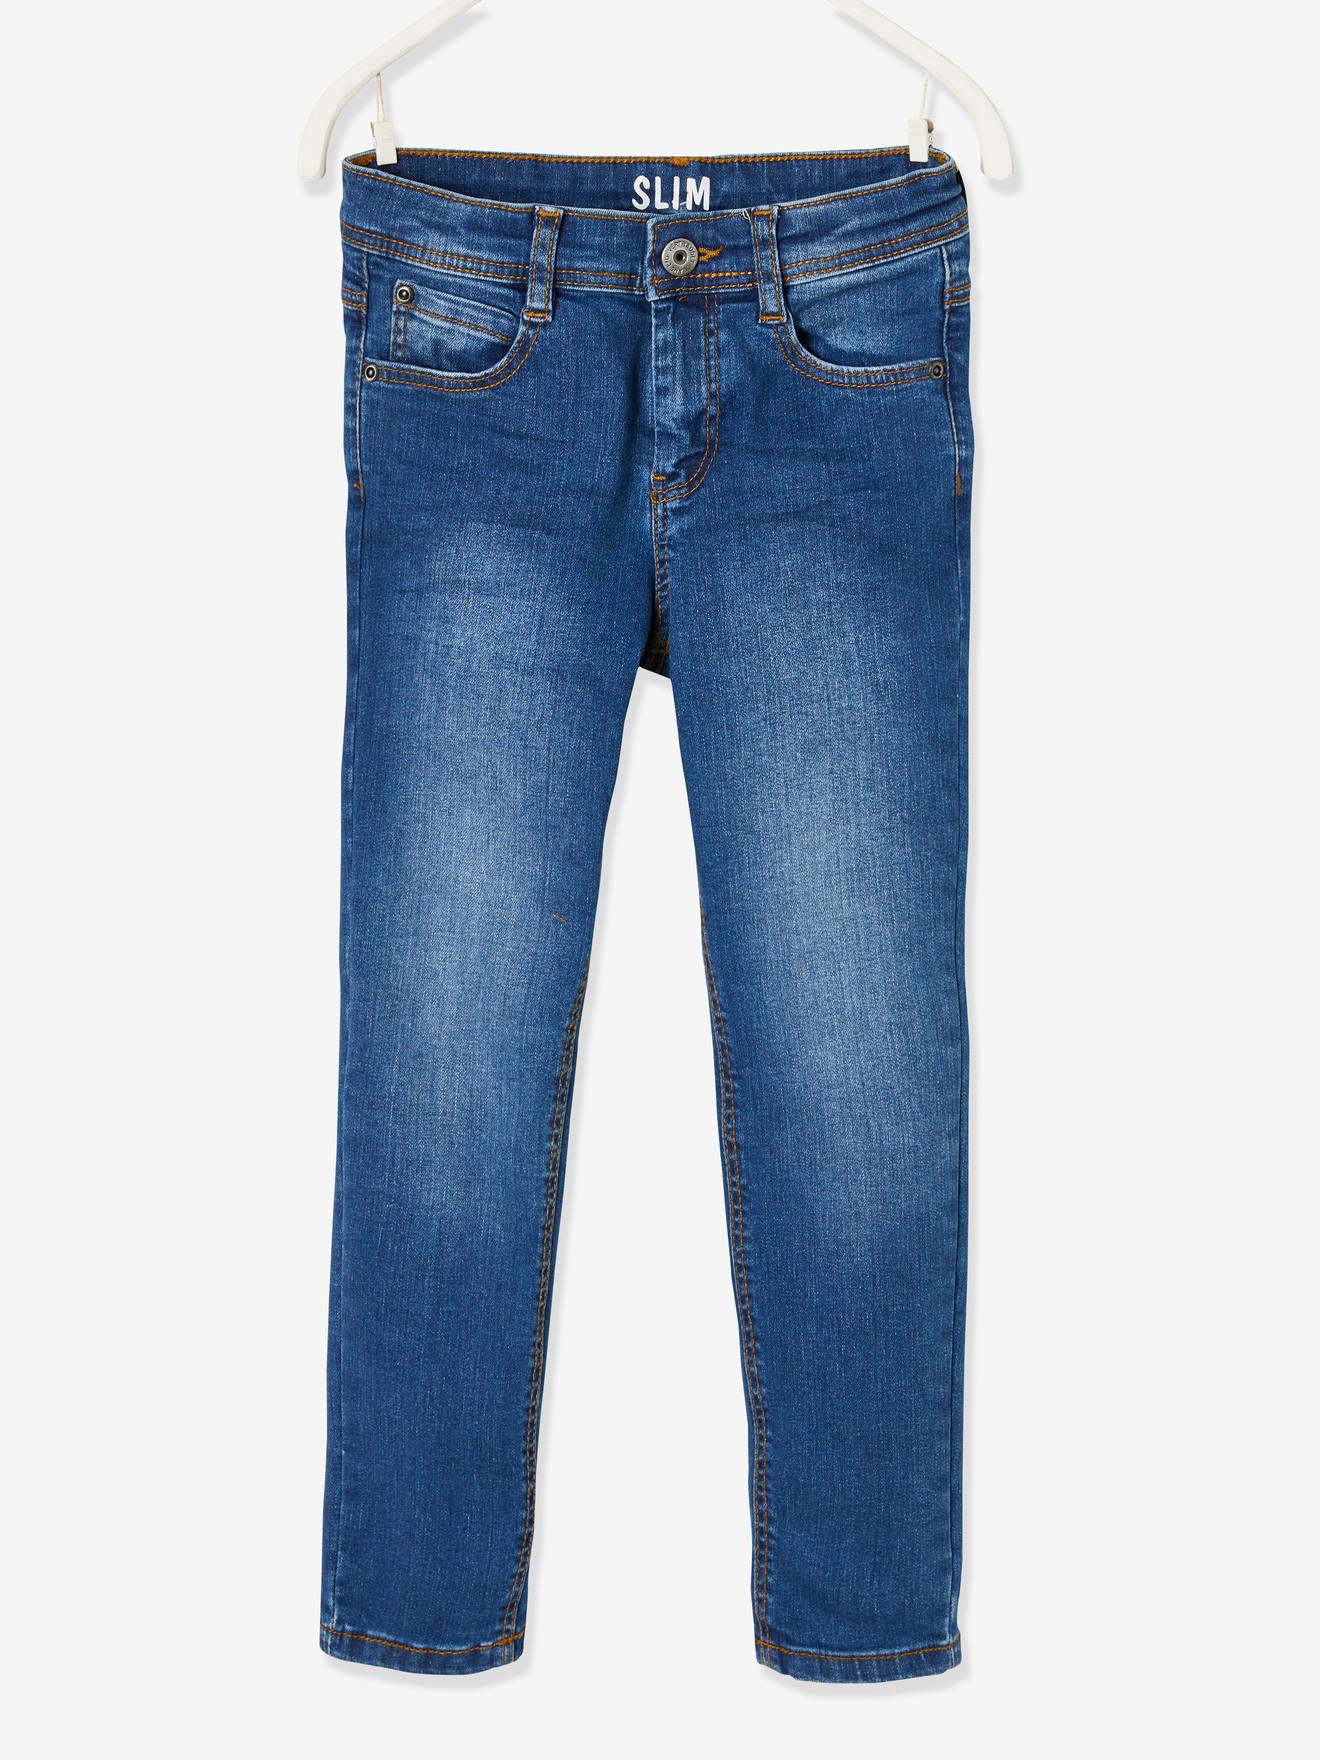 Jeans slim morfológicos 'waterless', medida das ancas MÉDIA, para menino azul escuro desbotado